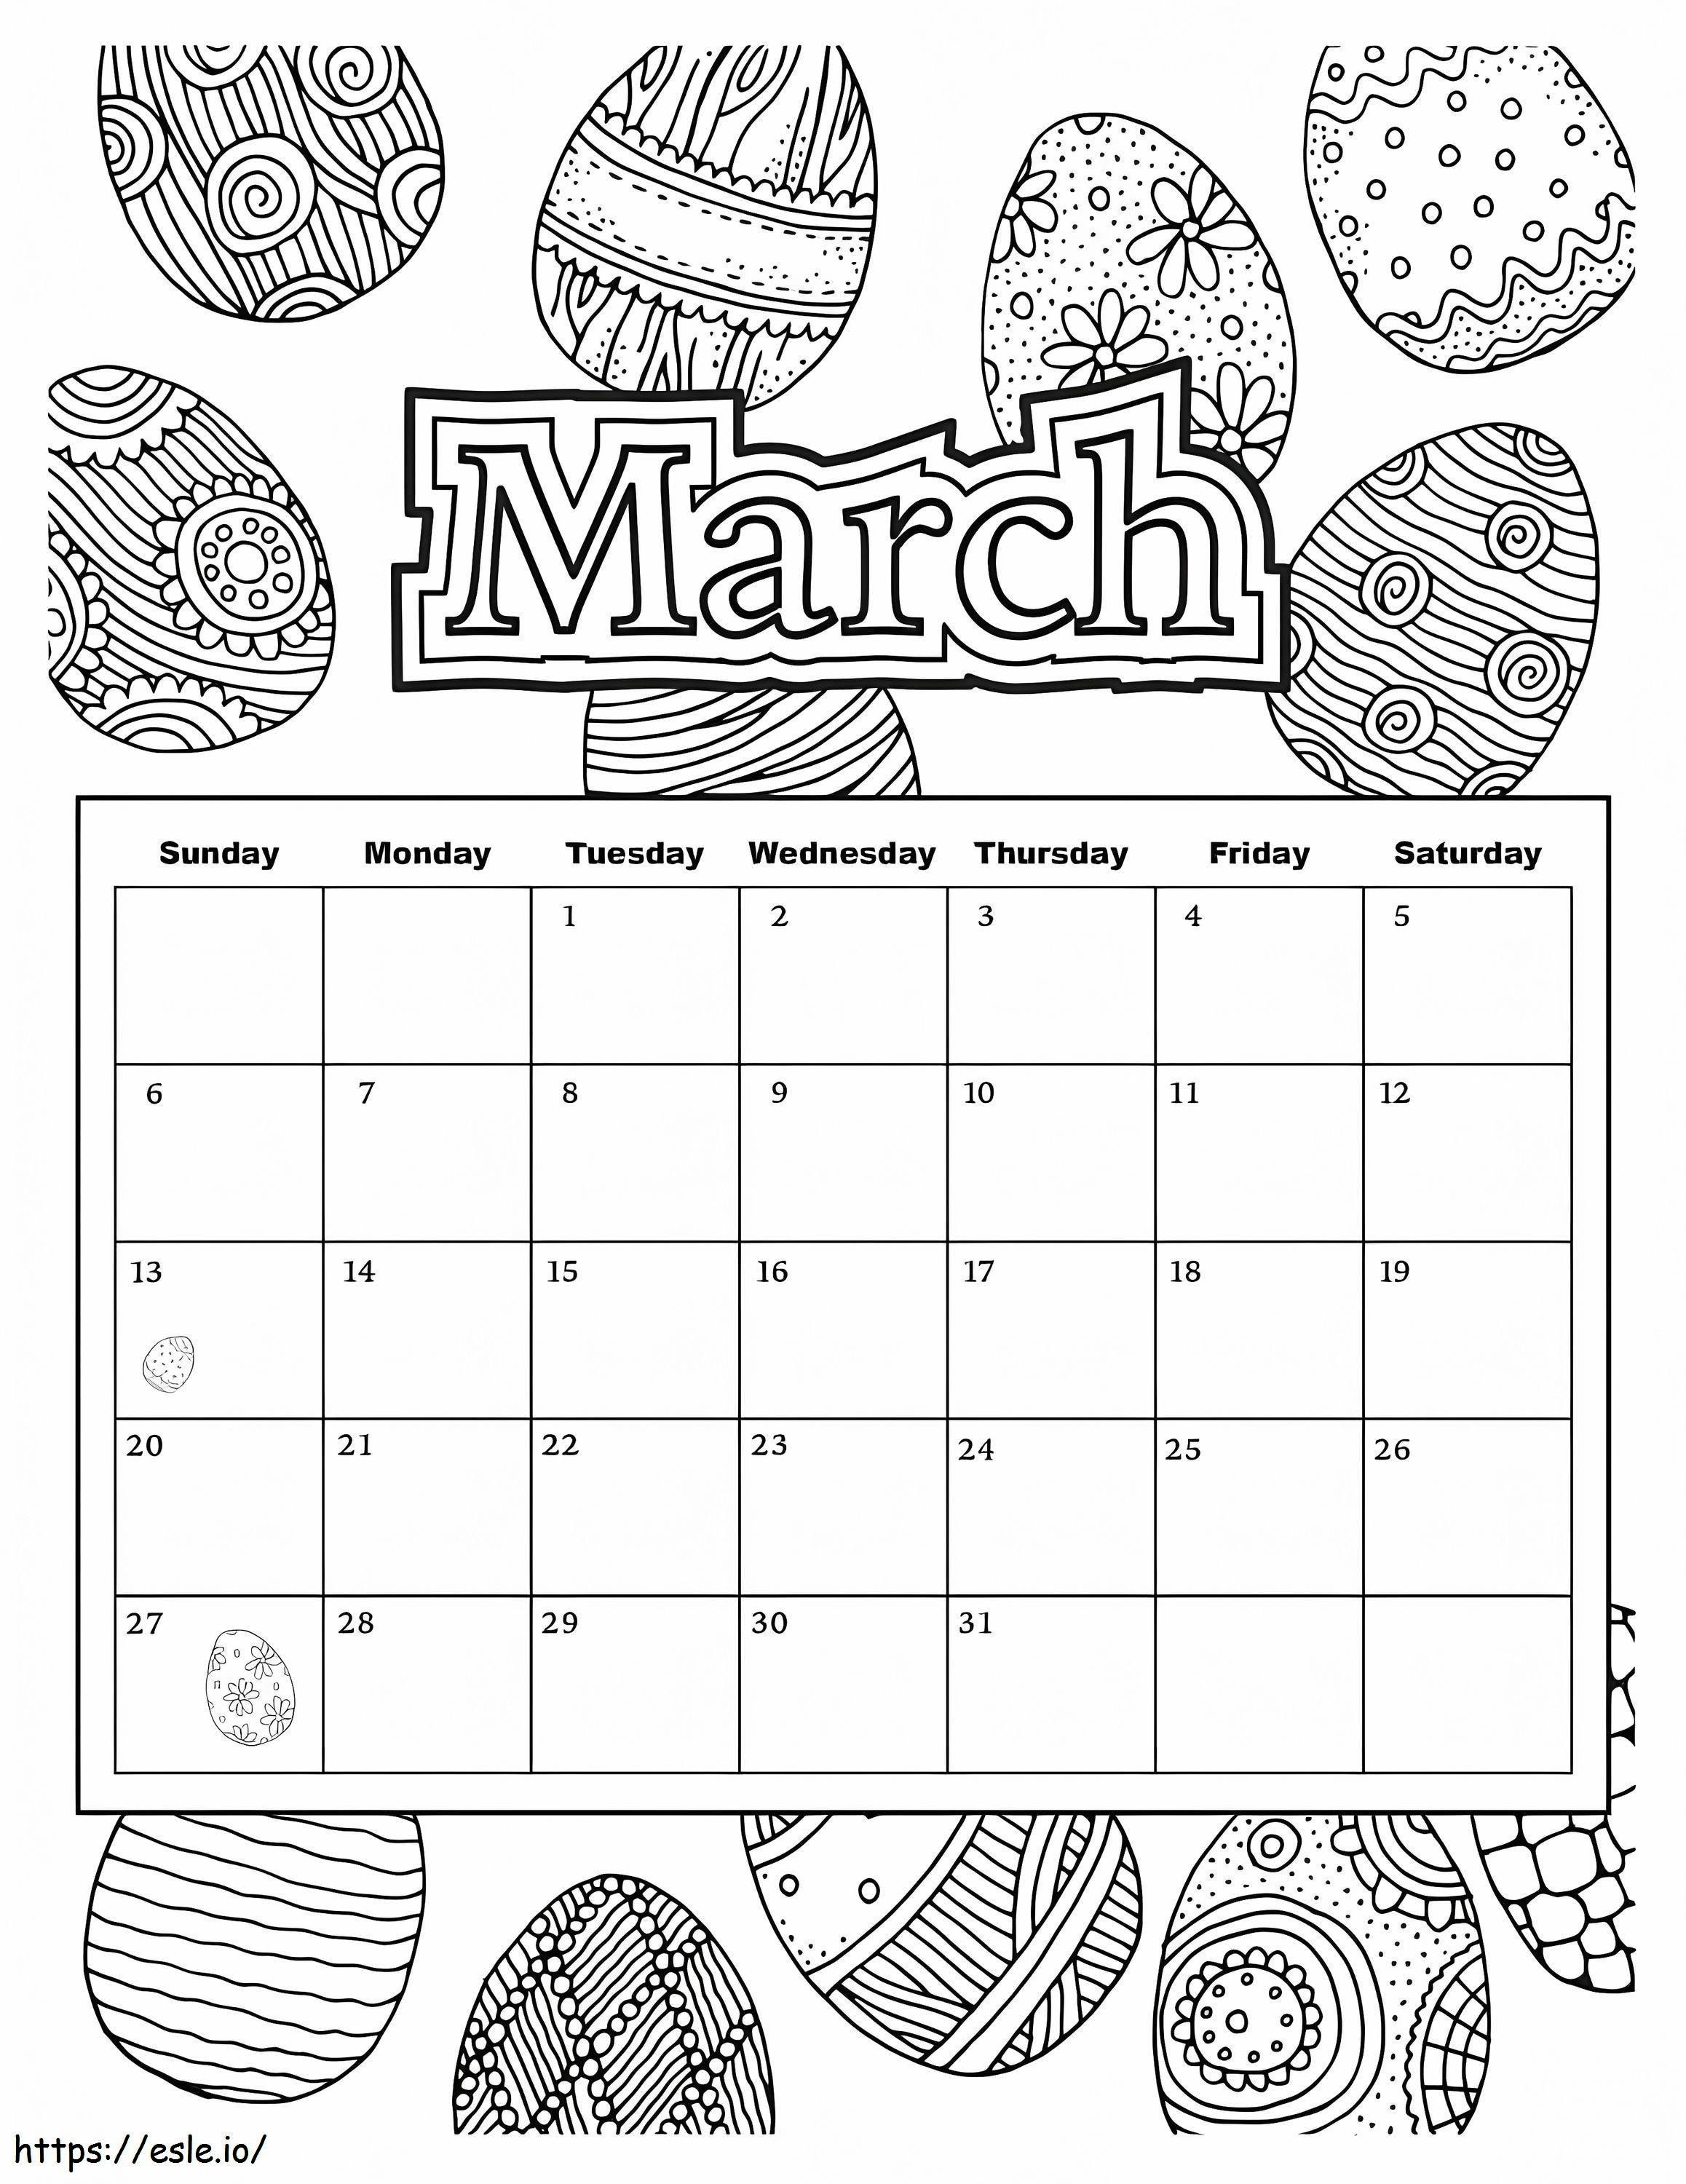 Kalendarz Wielkanocny na marzec kolorowanka